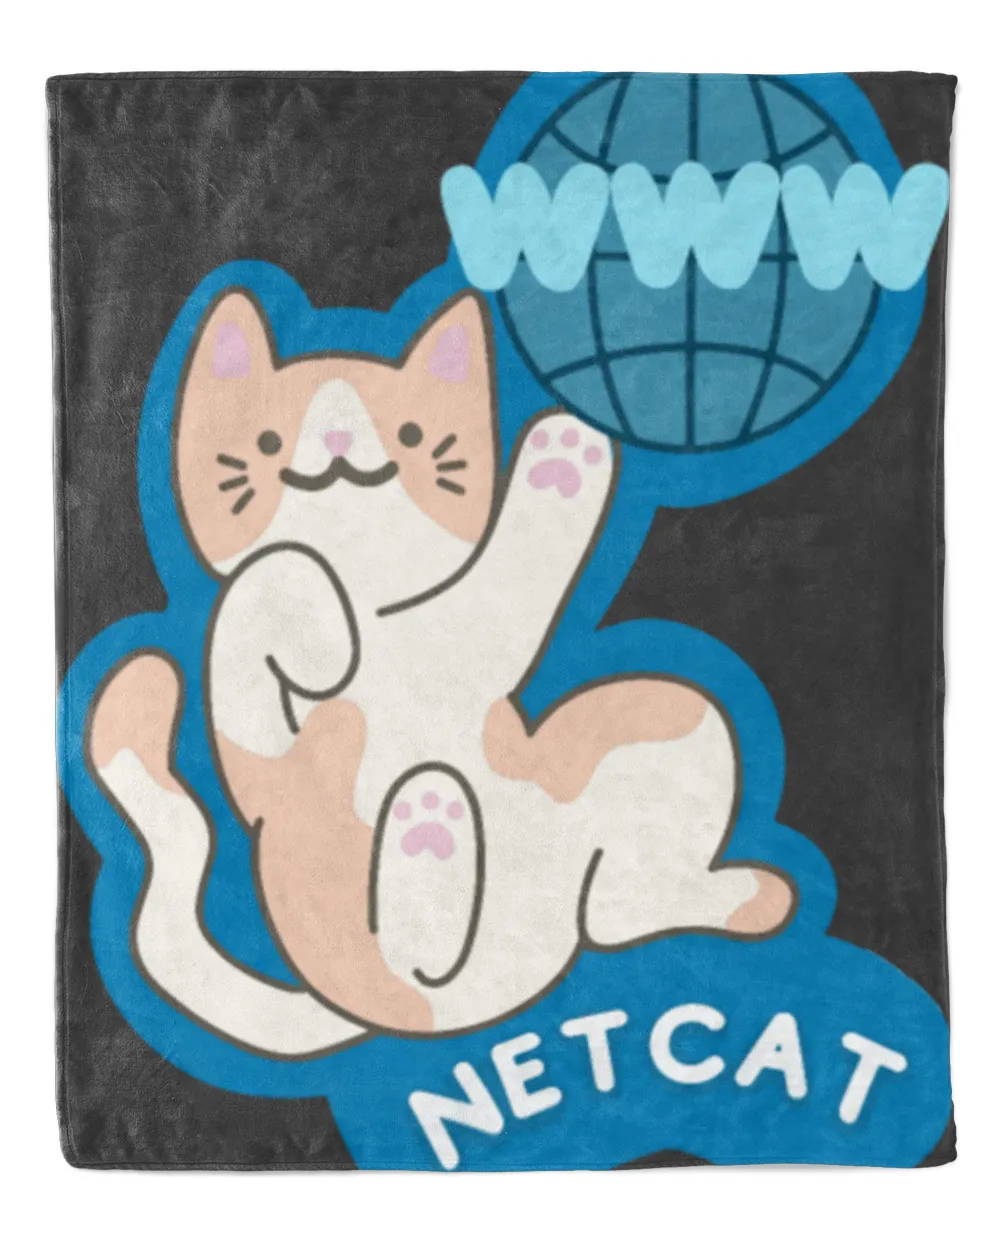 NET CAT